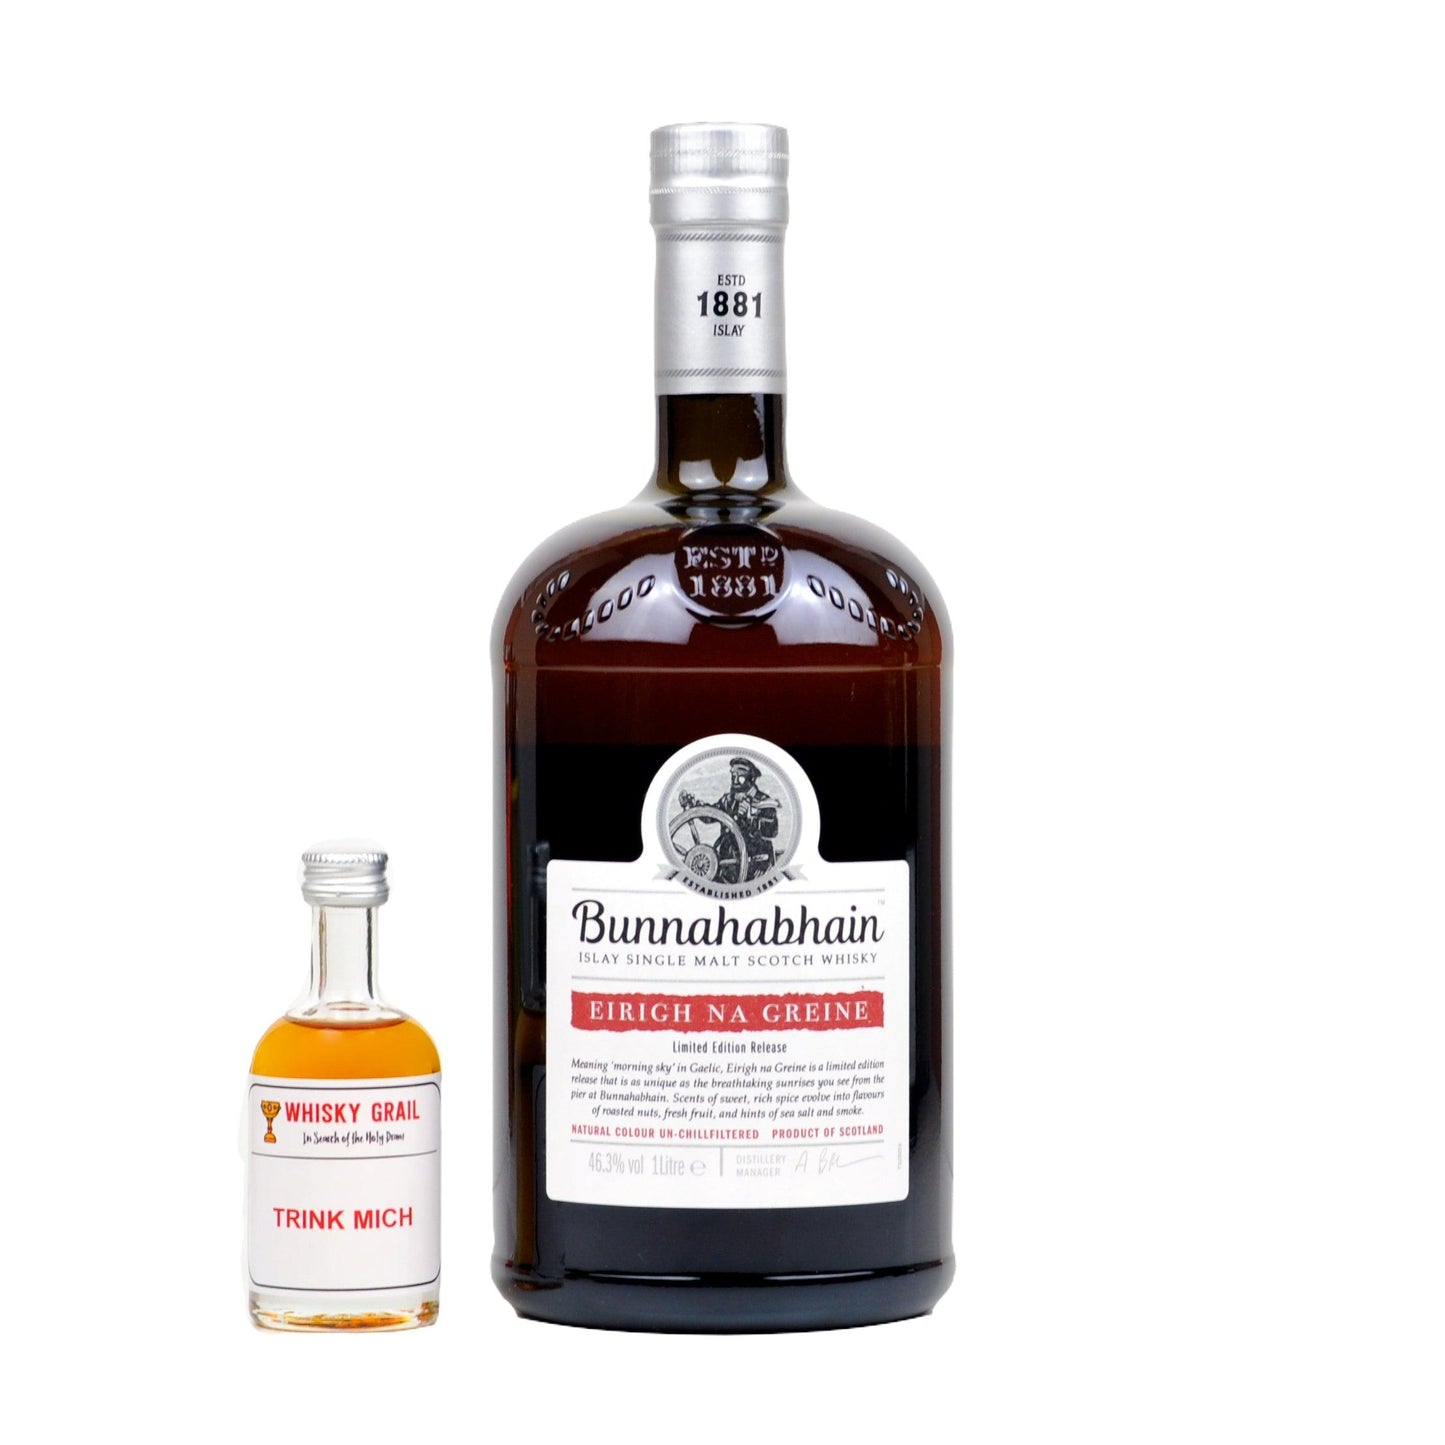 Bunnahabhain Whisky Set - Whisky Grail